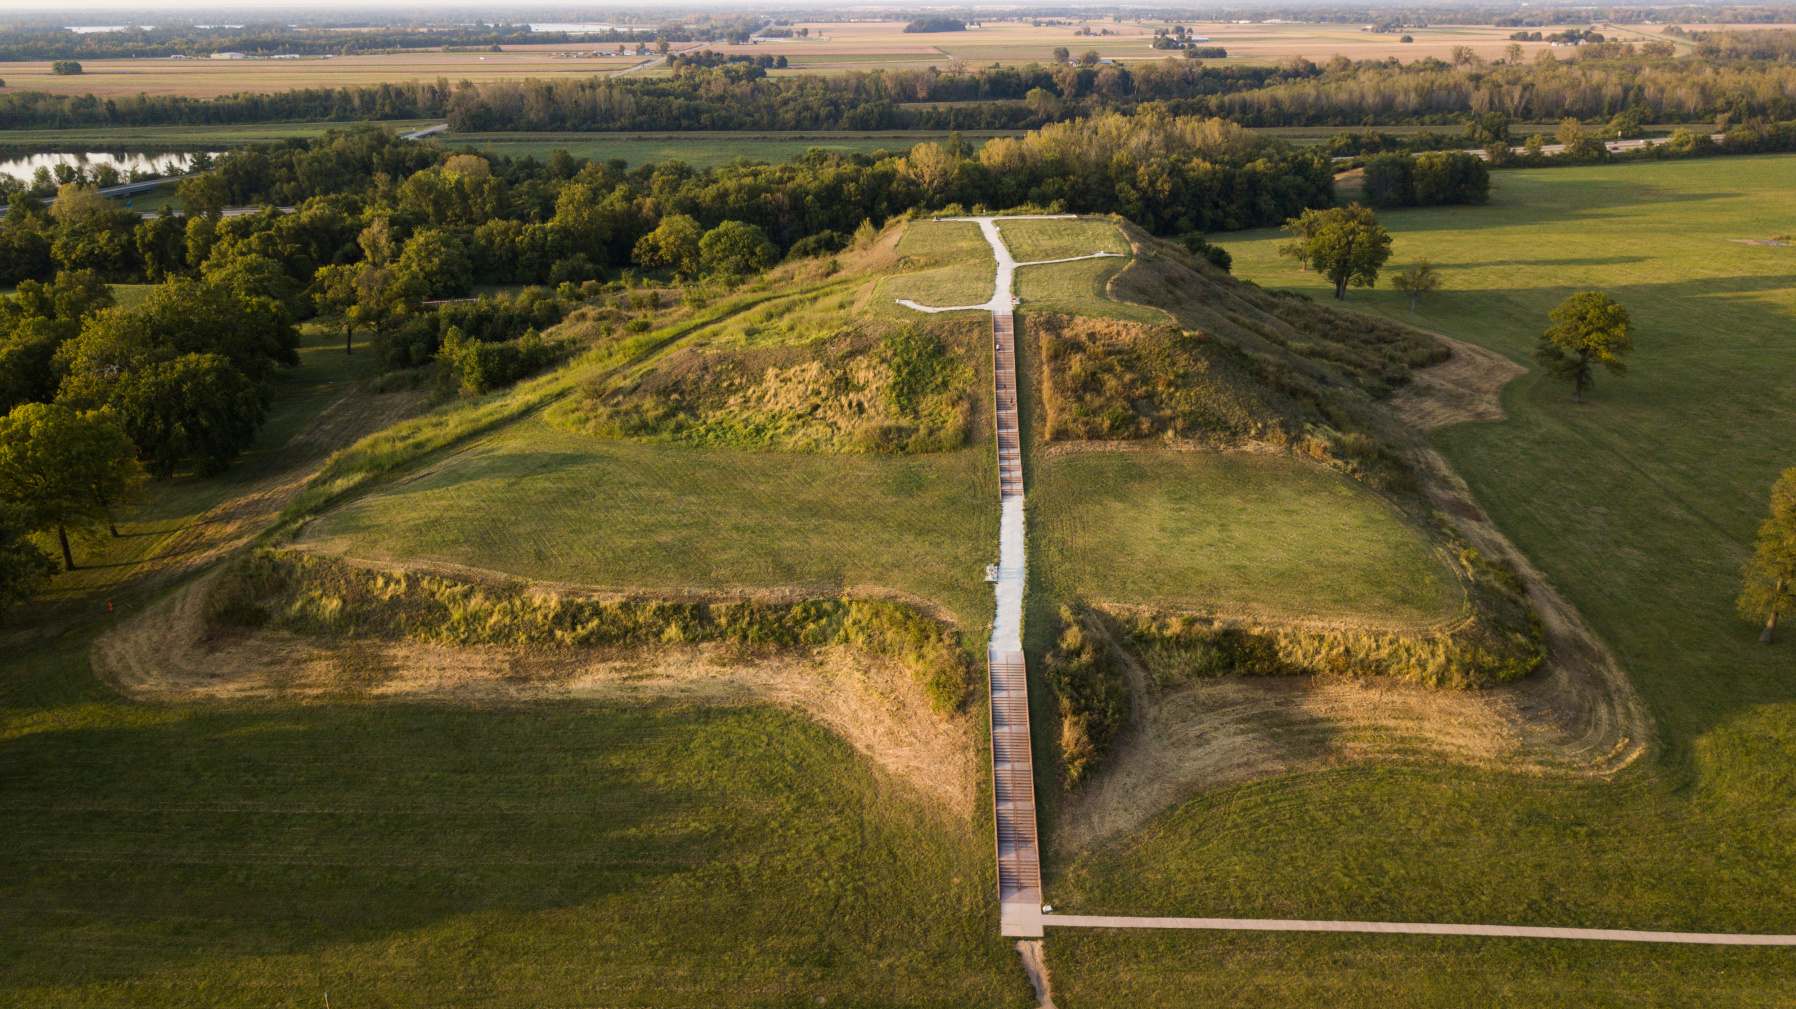 Monks Mound, construit entre 950 et 1100 de notre ère et situé sur le site du patrimoine mondial de l'UNESCO Cahokia Mounds près de Collinsville, dans l'Illinois, est le plus grand terrassement précolombien d'Amérique au nord de la Mésoamérique. Un certain nombre de cultures précolombiennes sont collectivement appelées "Mound Builders".